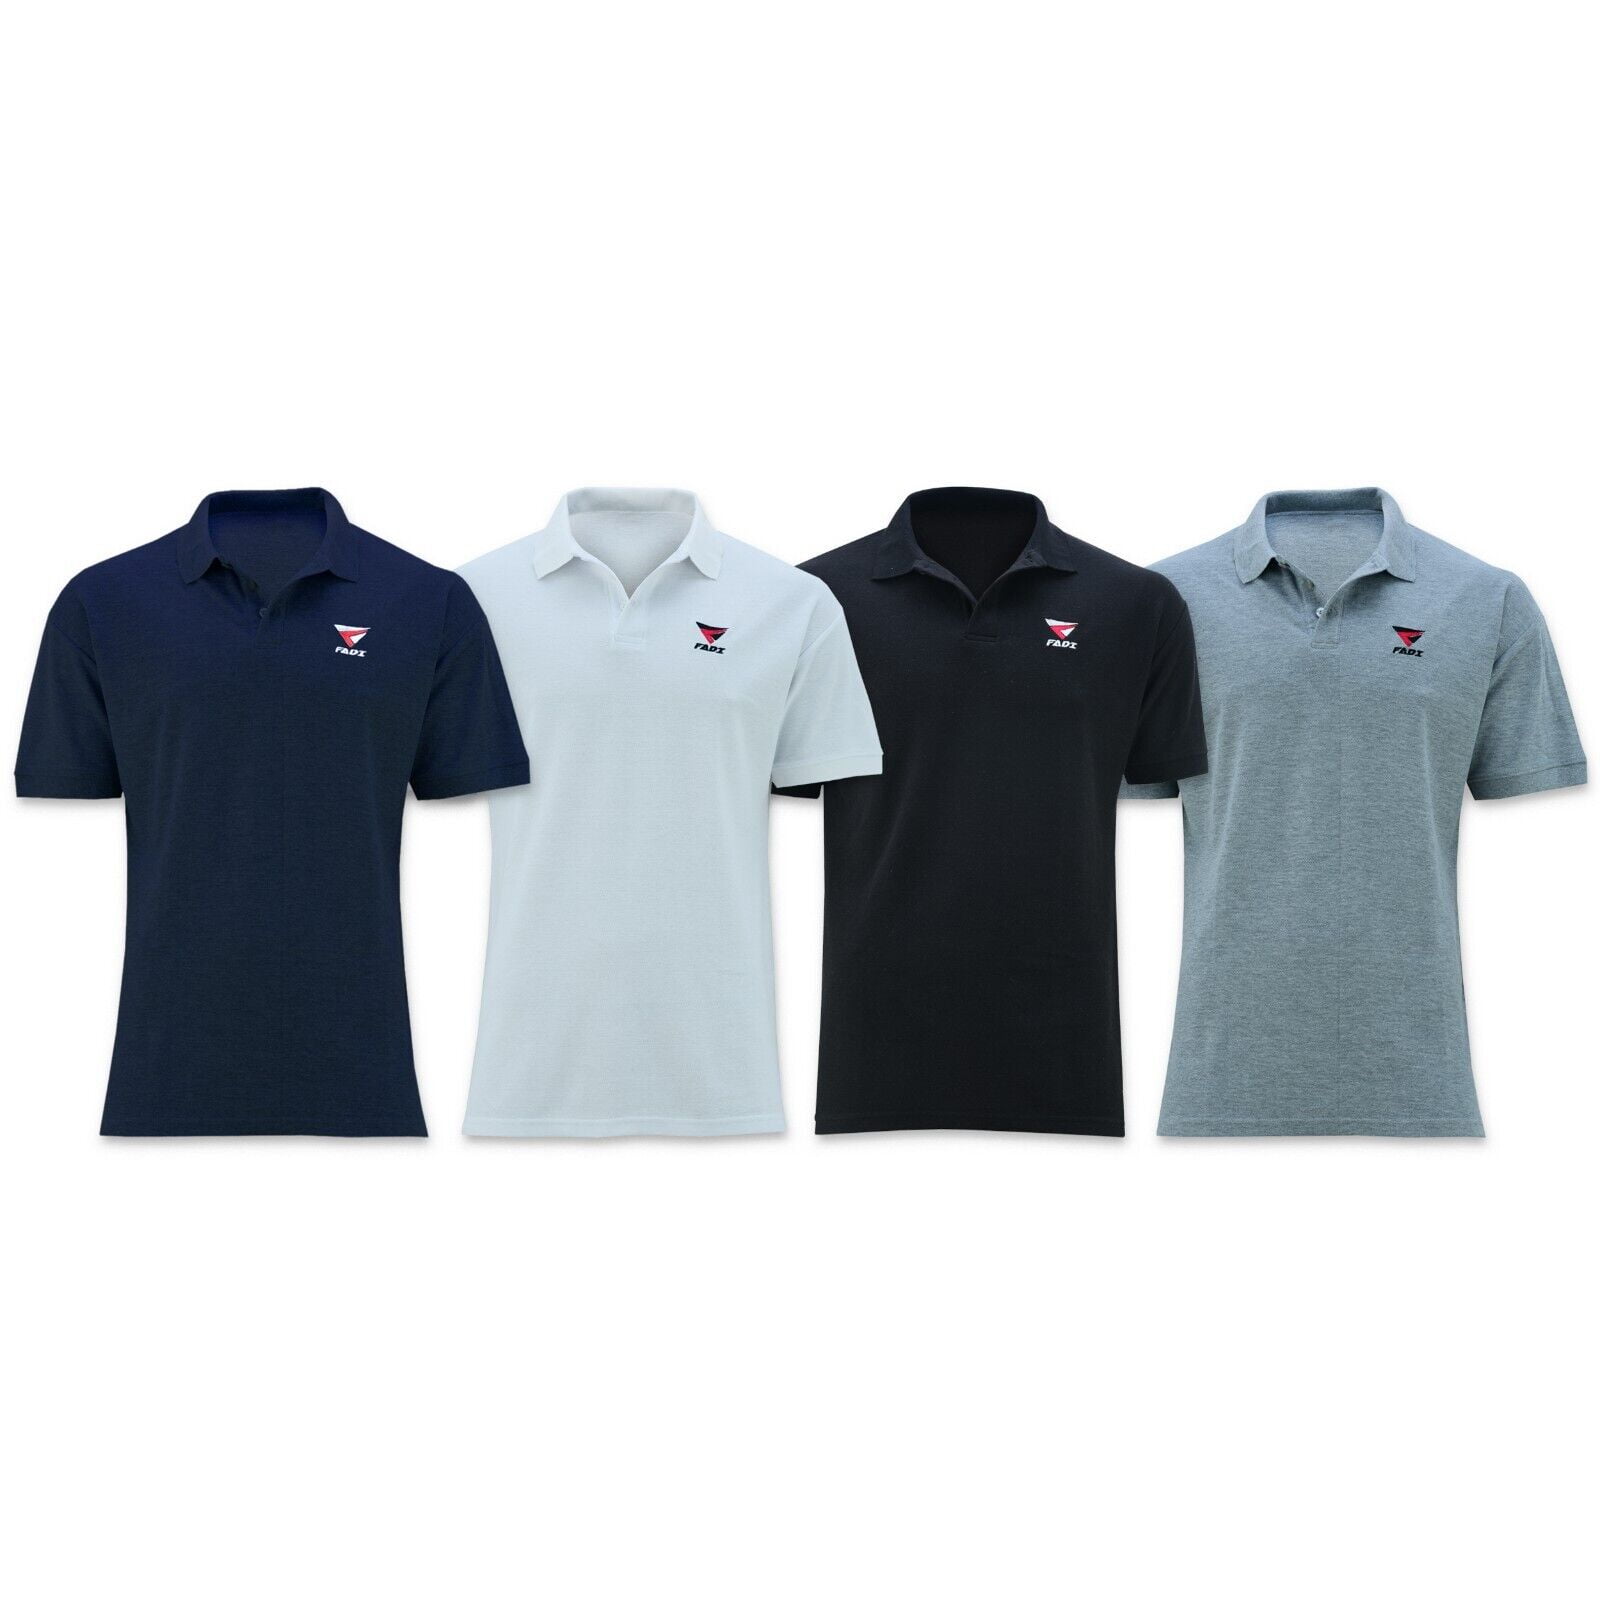 FADI Polo Shirt Men's Jersey Short Sleeve Golf Sports Collar Fashion ...